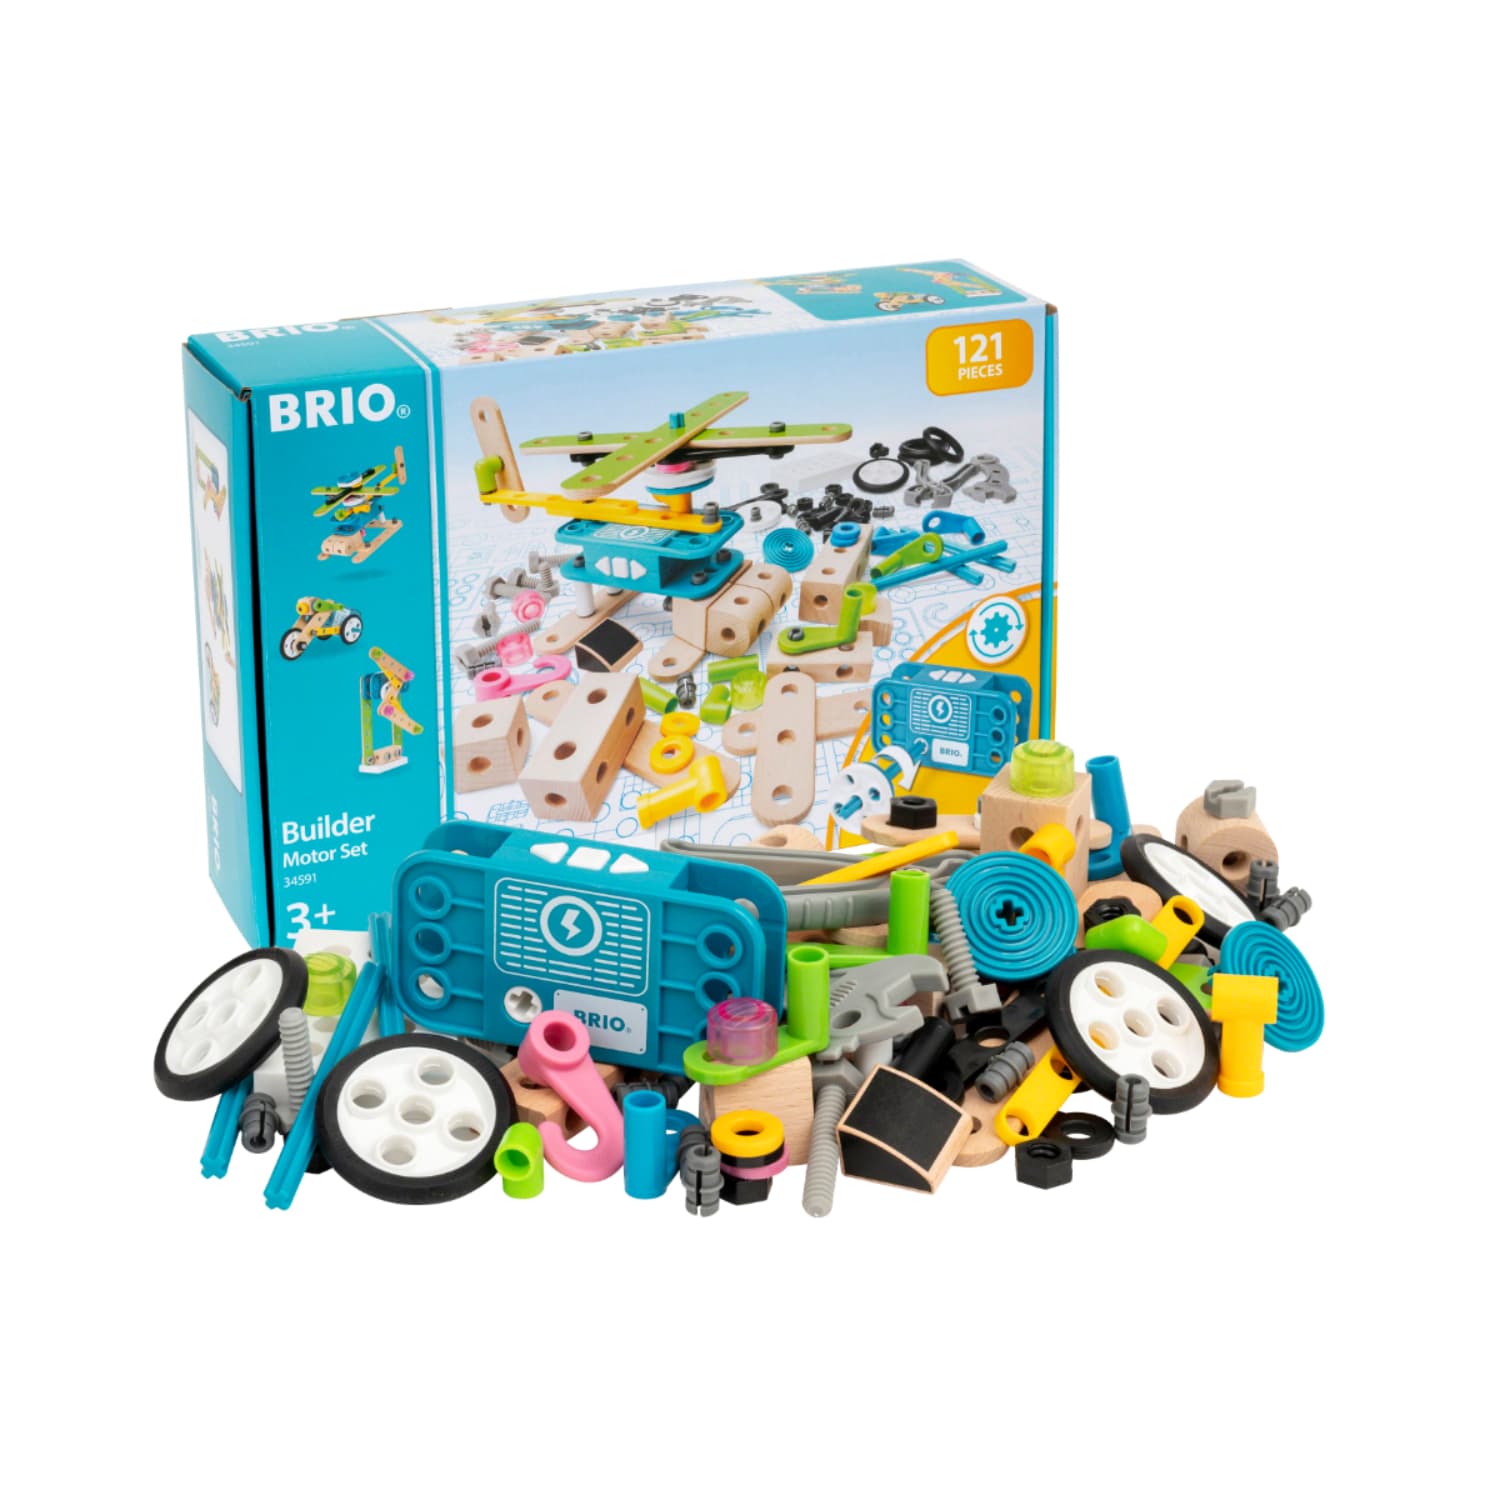 BRIO ブリオ ビルダー モーターセット 全121ピース 積み木 知育玩具 木製 正規輸入品